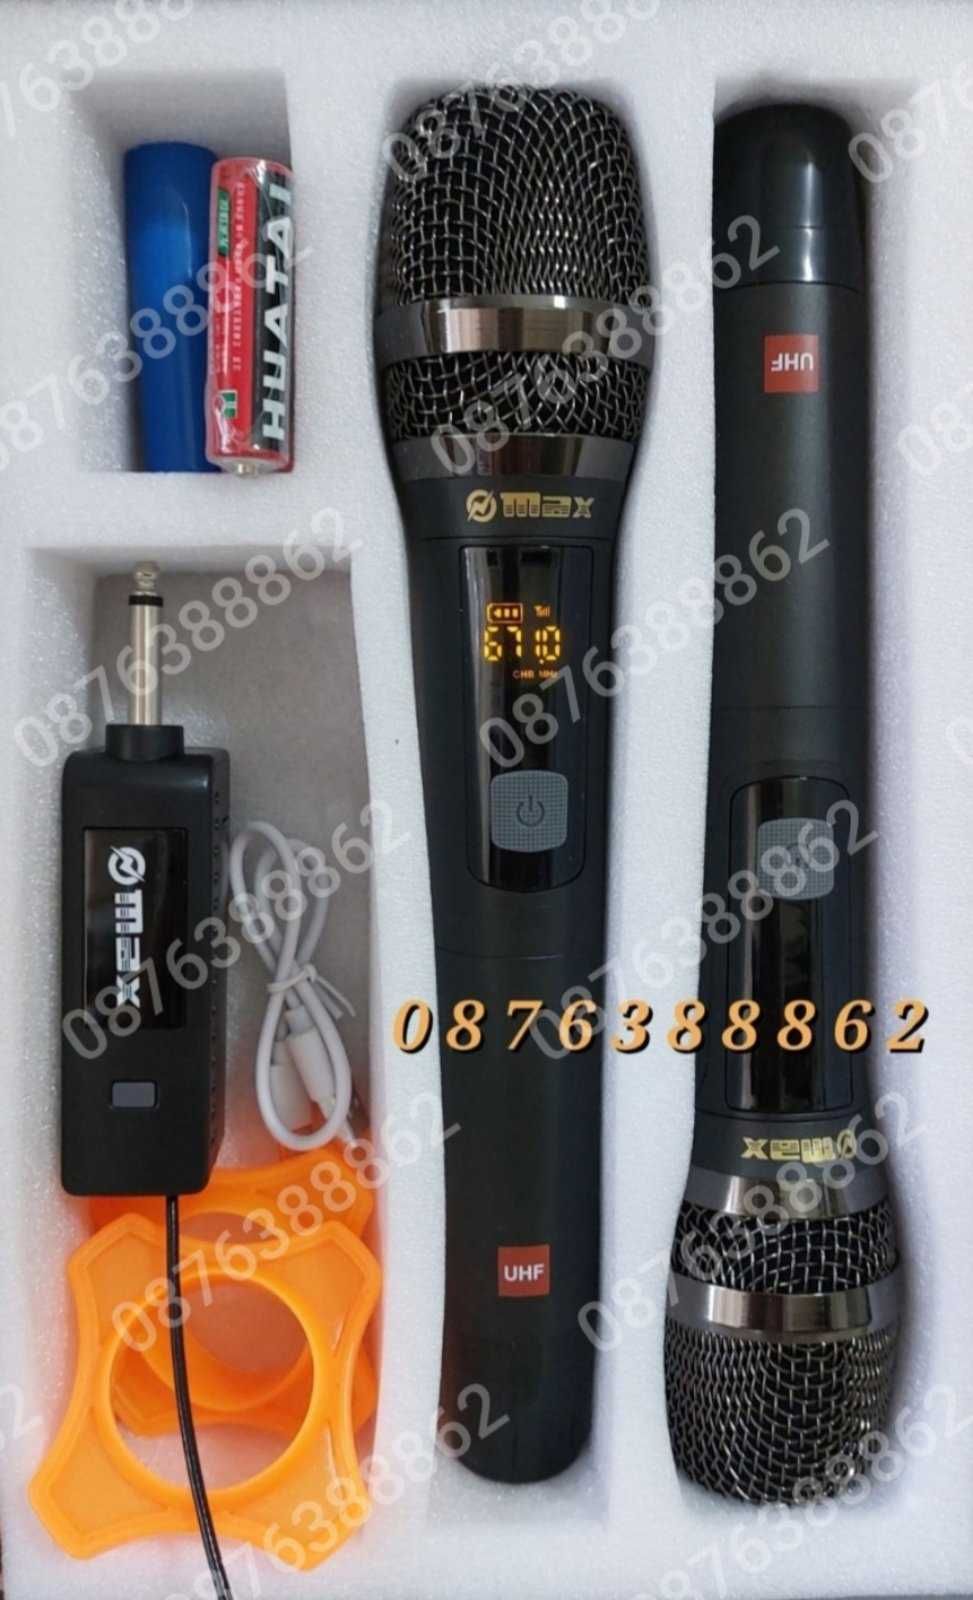 Професионални микрофони–2бр. безжични,Метална решетка, 6.35 мм,USB,UHF